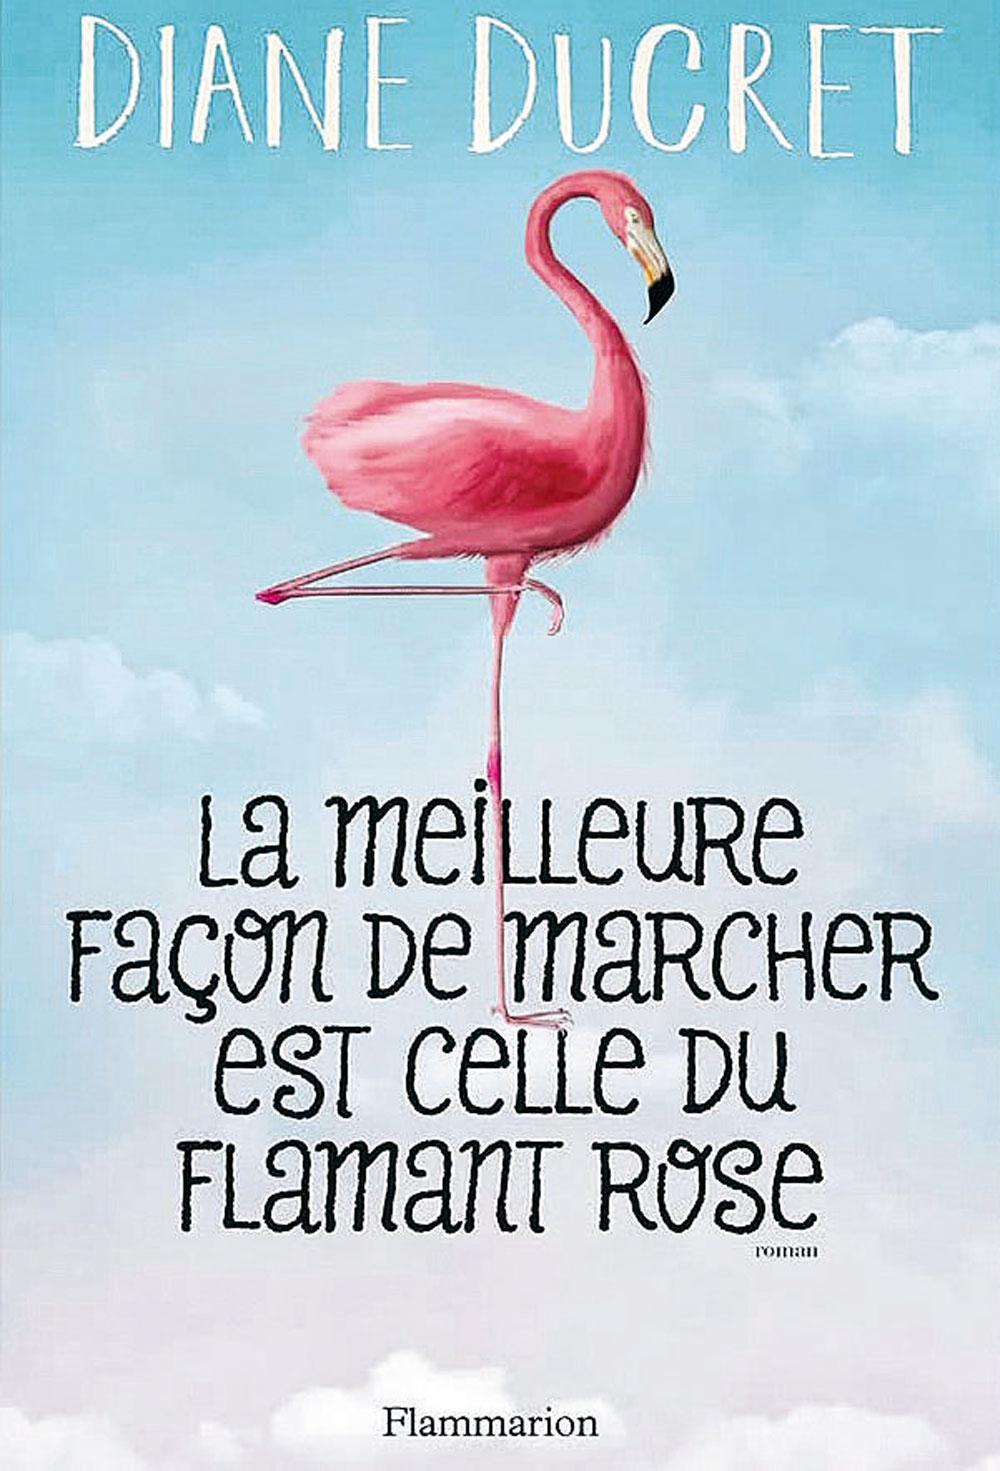 La Meilleure Façon de marcher est celle du flamant rose, par Diane Ducret, Flammarion, 278 p.